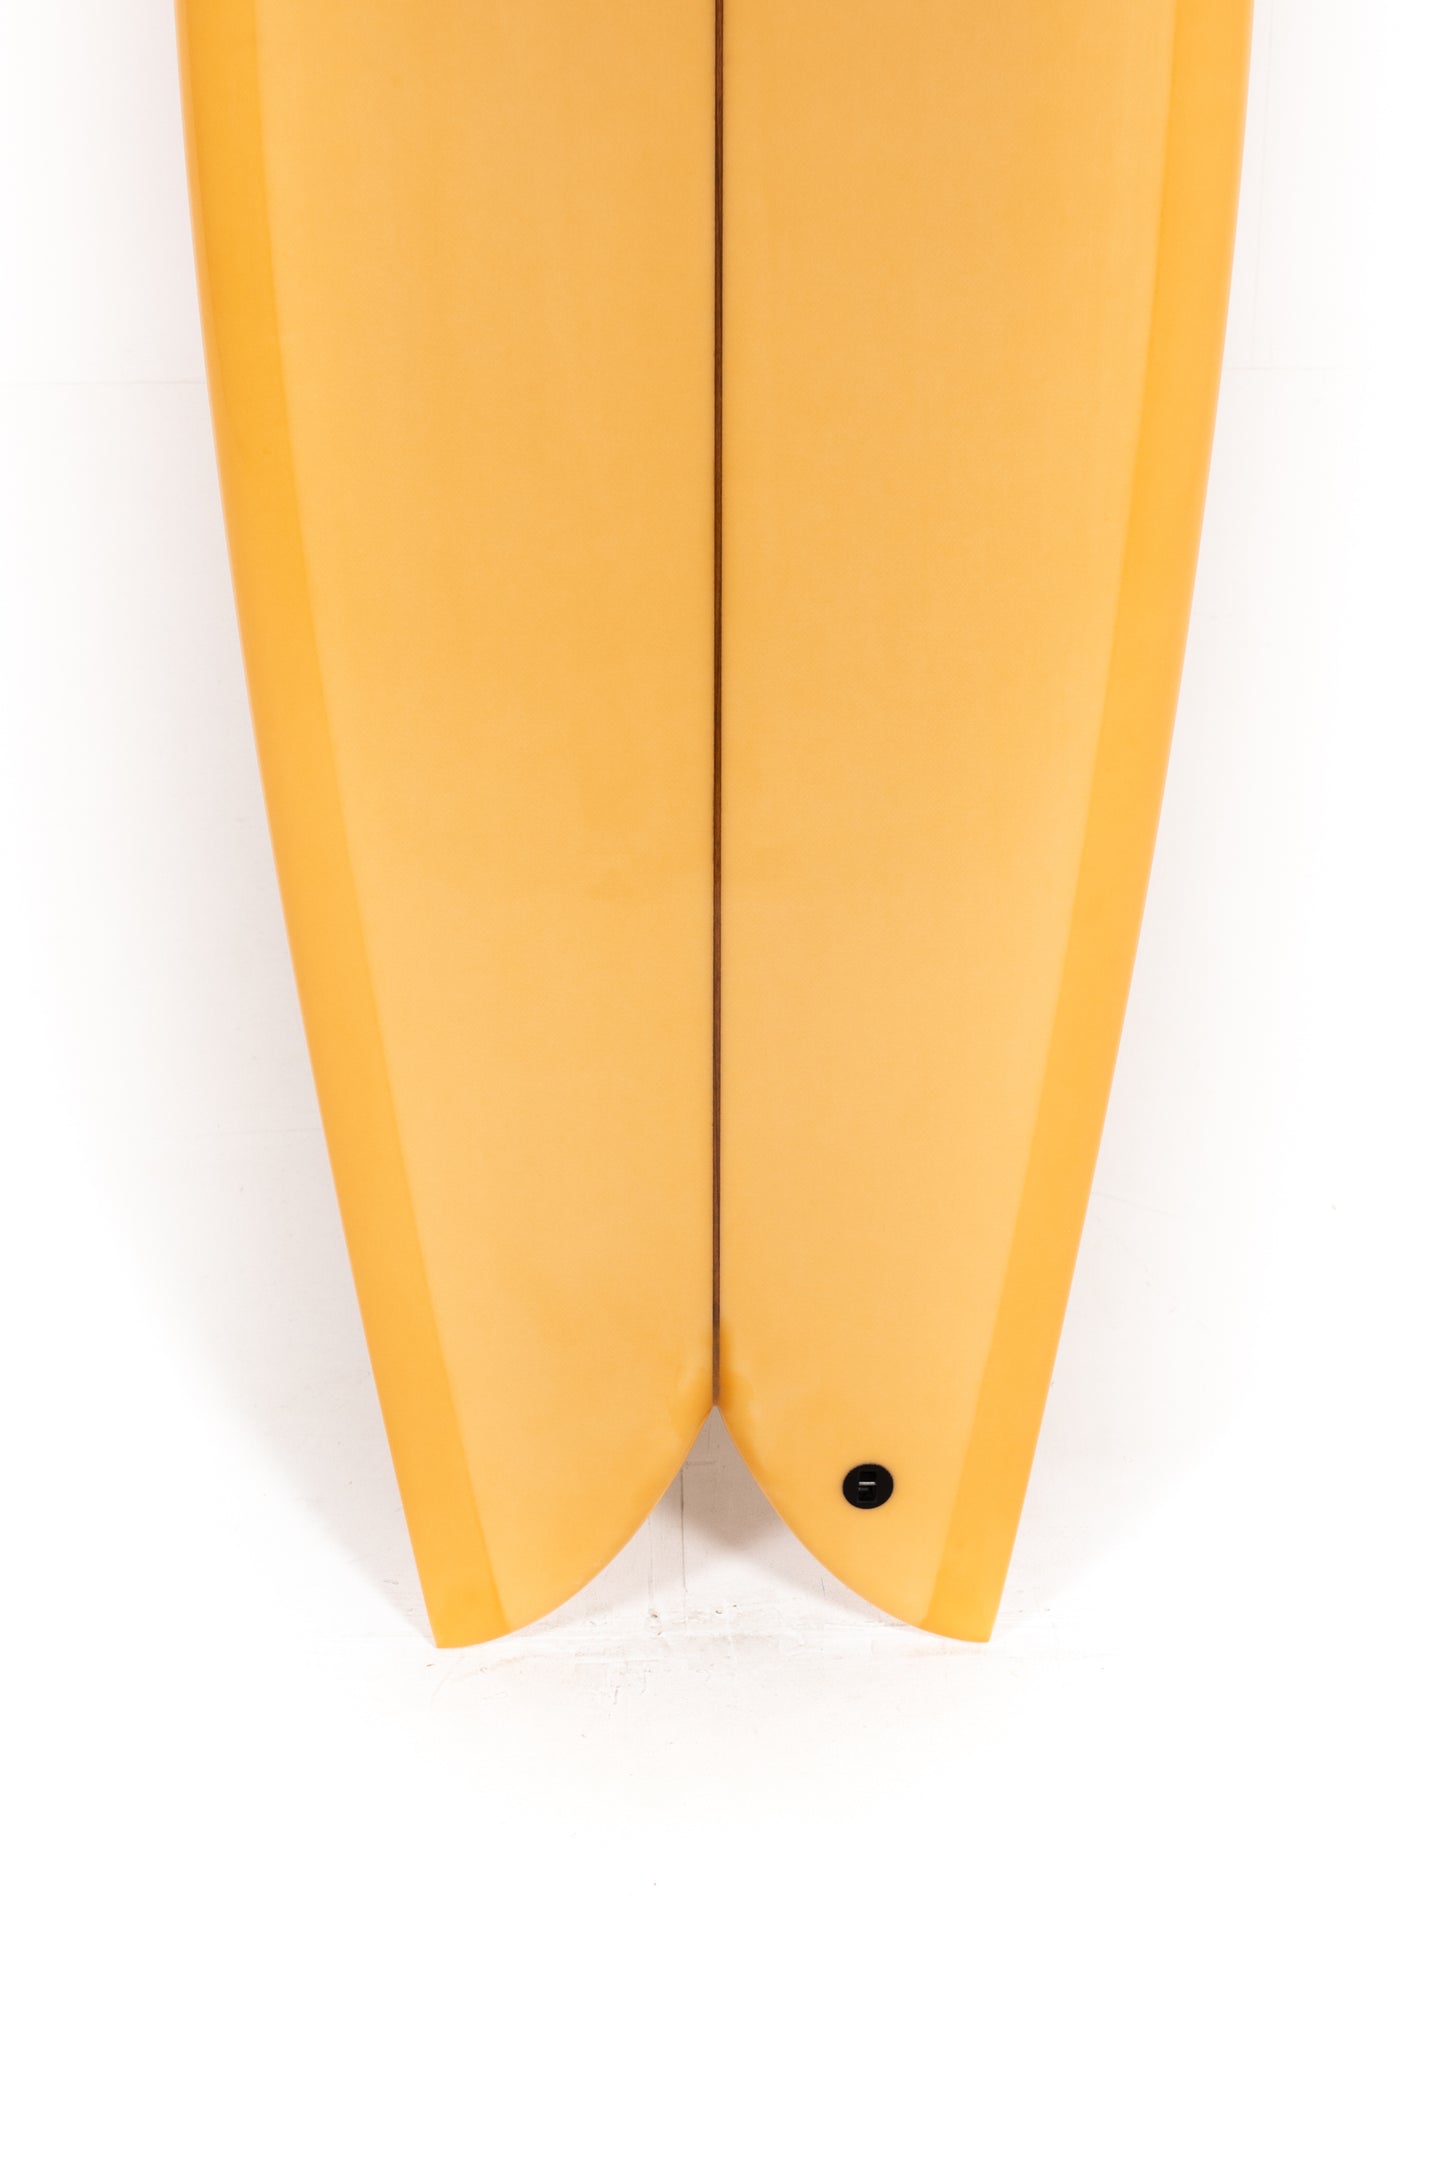 
                  
                    Pukas-Surf-Shop-Christenson-Surfboards-Chris-Fish-Chris-Christenson-5_6_-CX06029
                  
                